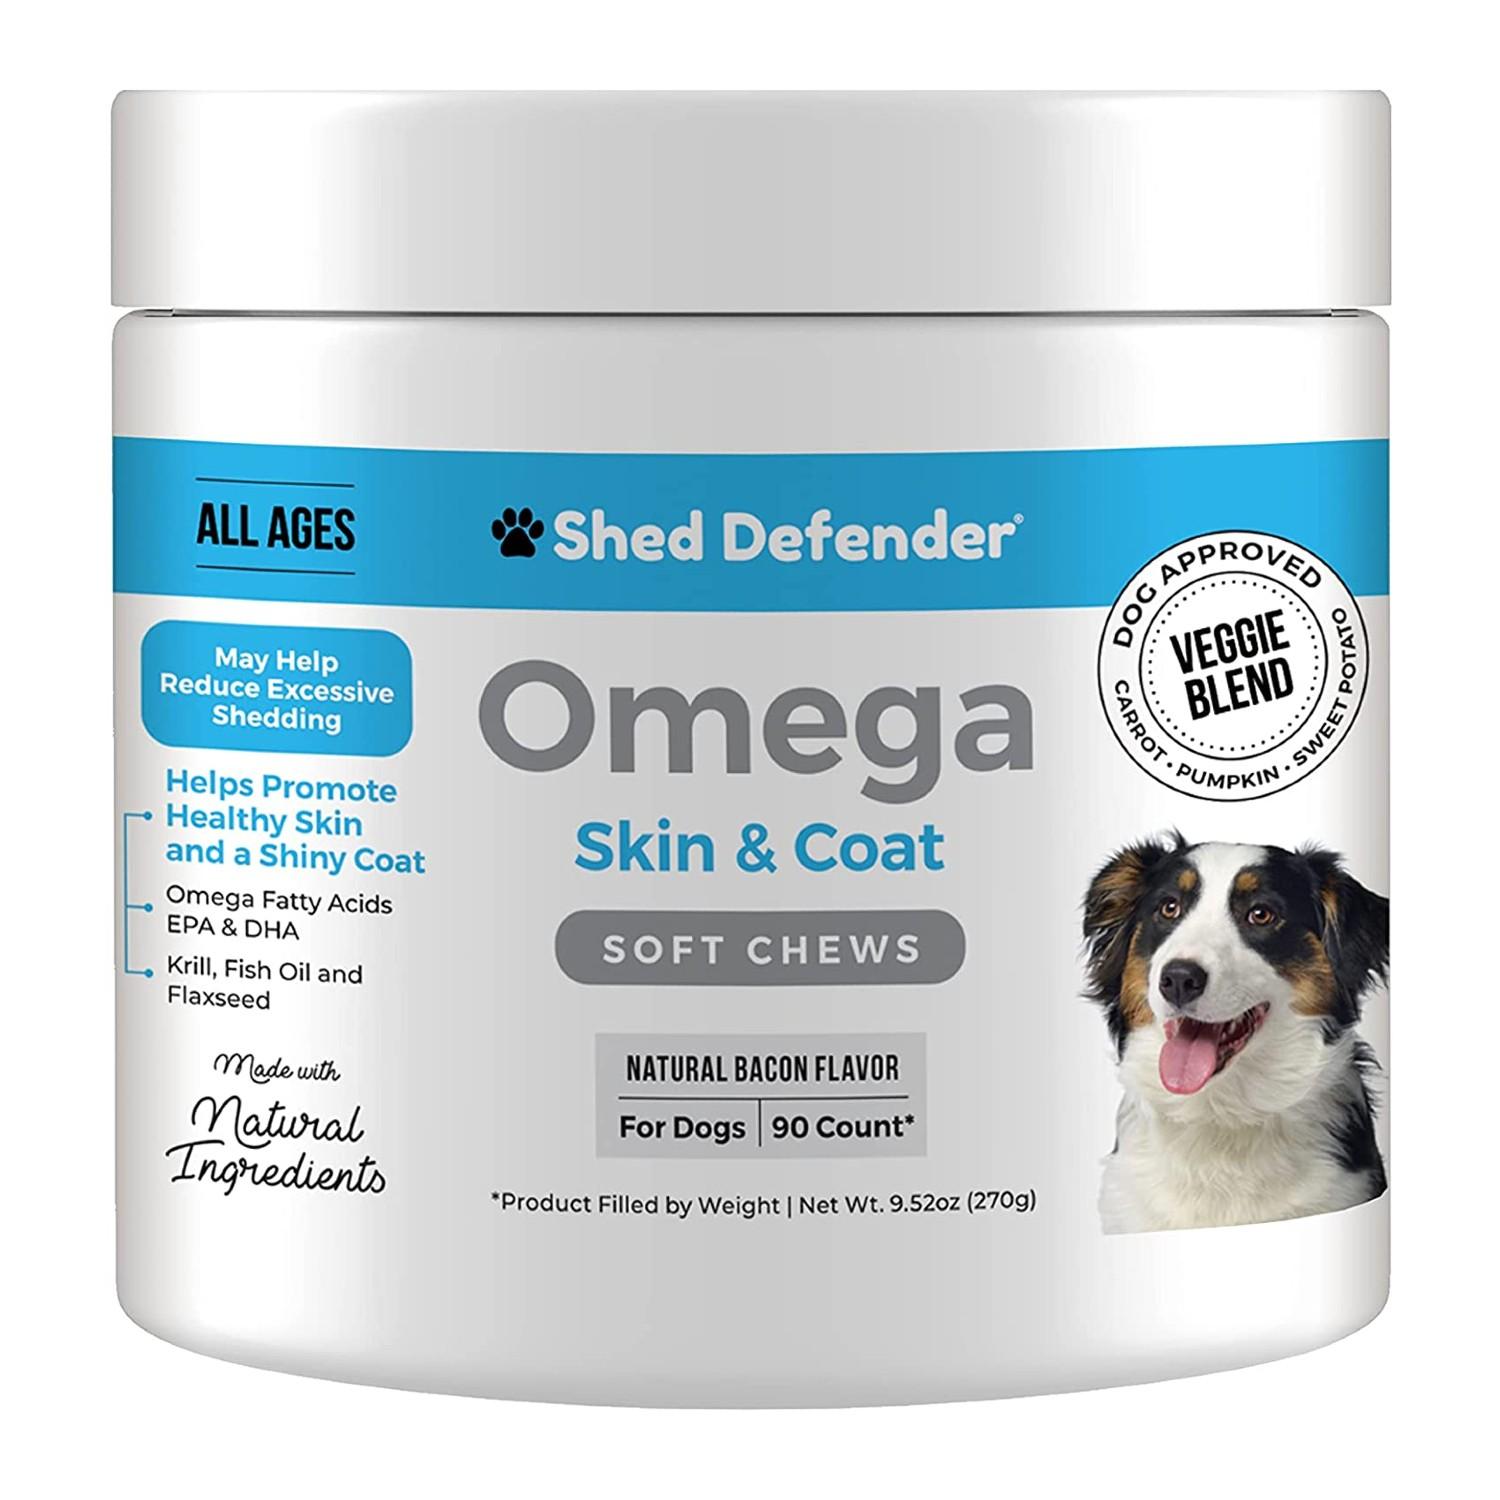 Shed Defender Dog Soft Chews - Omega Skin & Coat